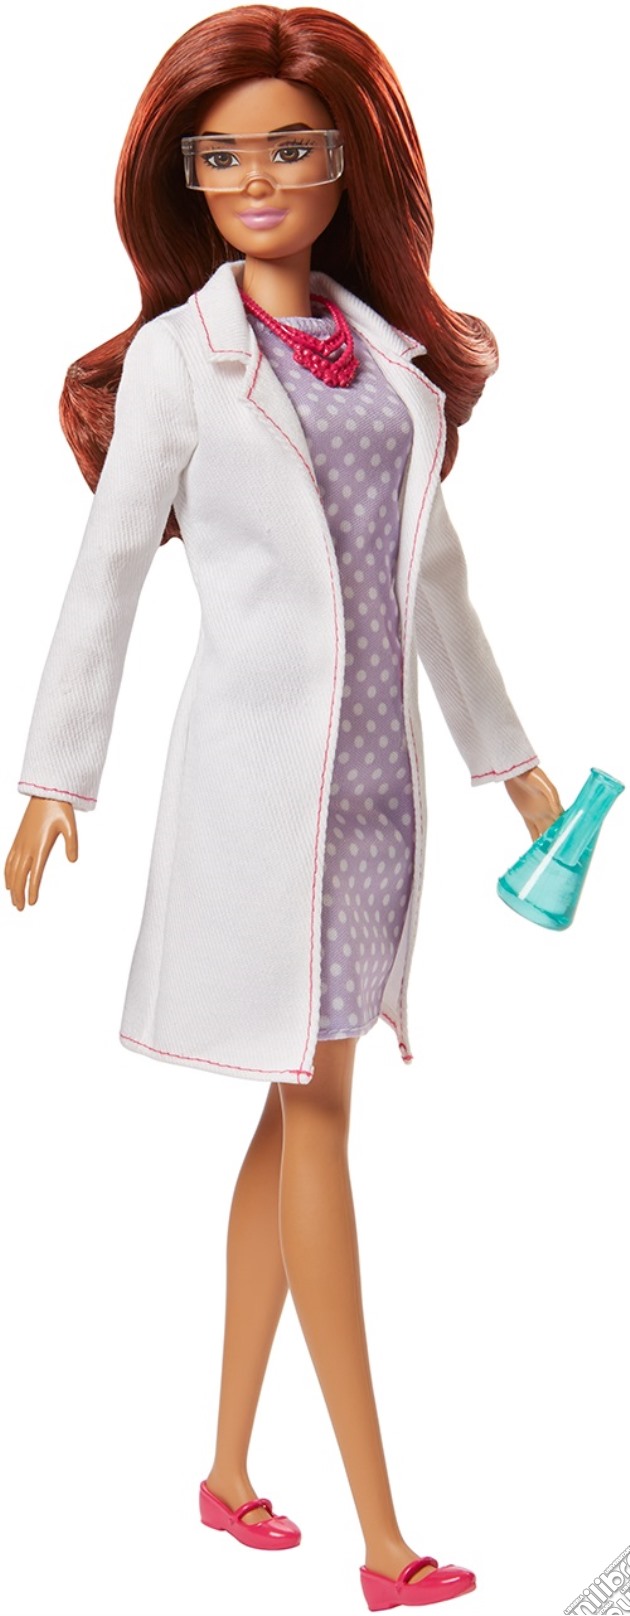 Mattel FJB09 - Barbie - I Can Be - Scienziata gioco di Mattel